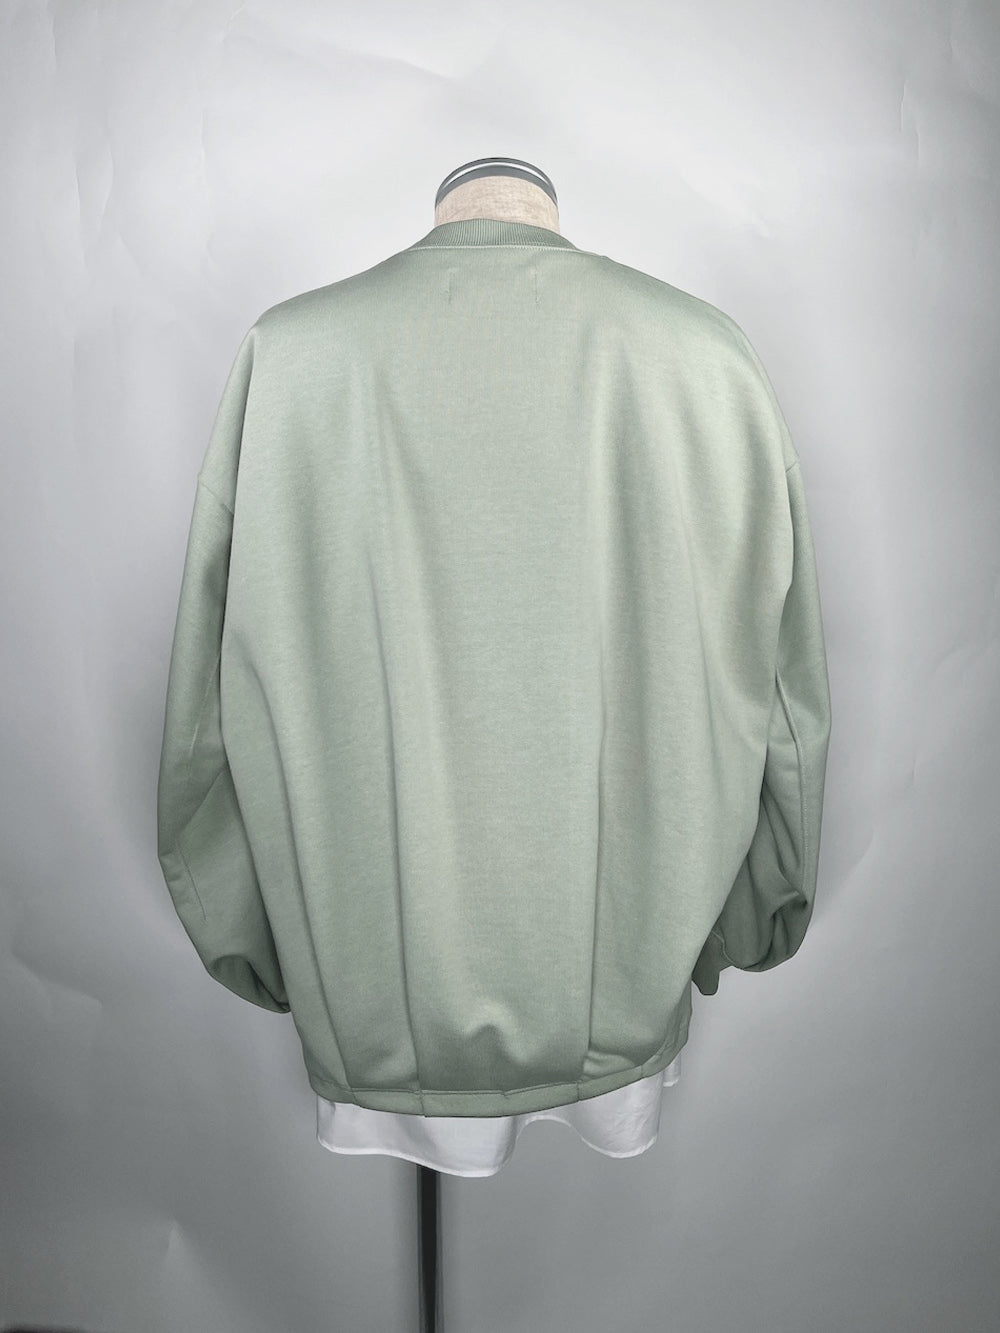 LB23SS-PO04-HJ | 硬质平纹针织套头衫 | 春绿